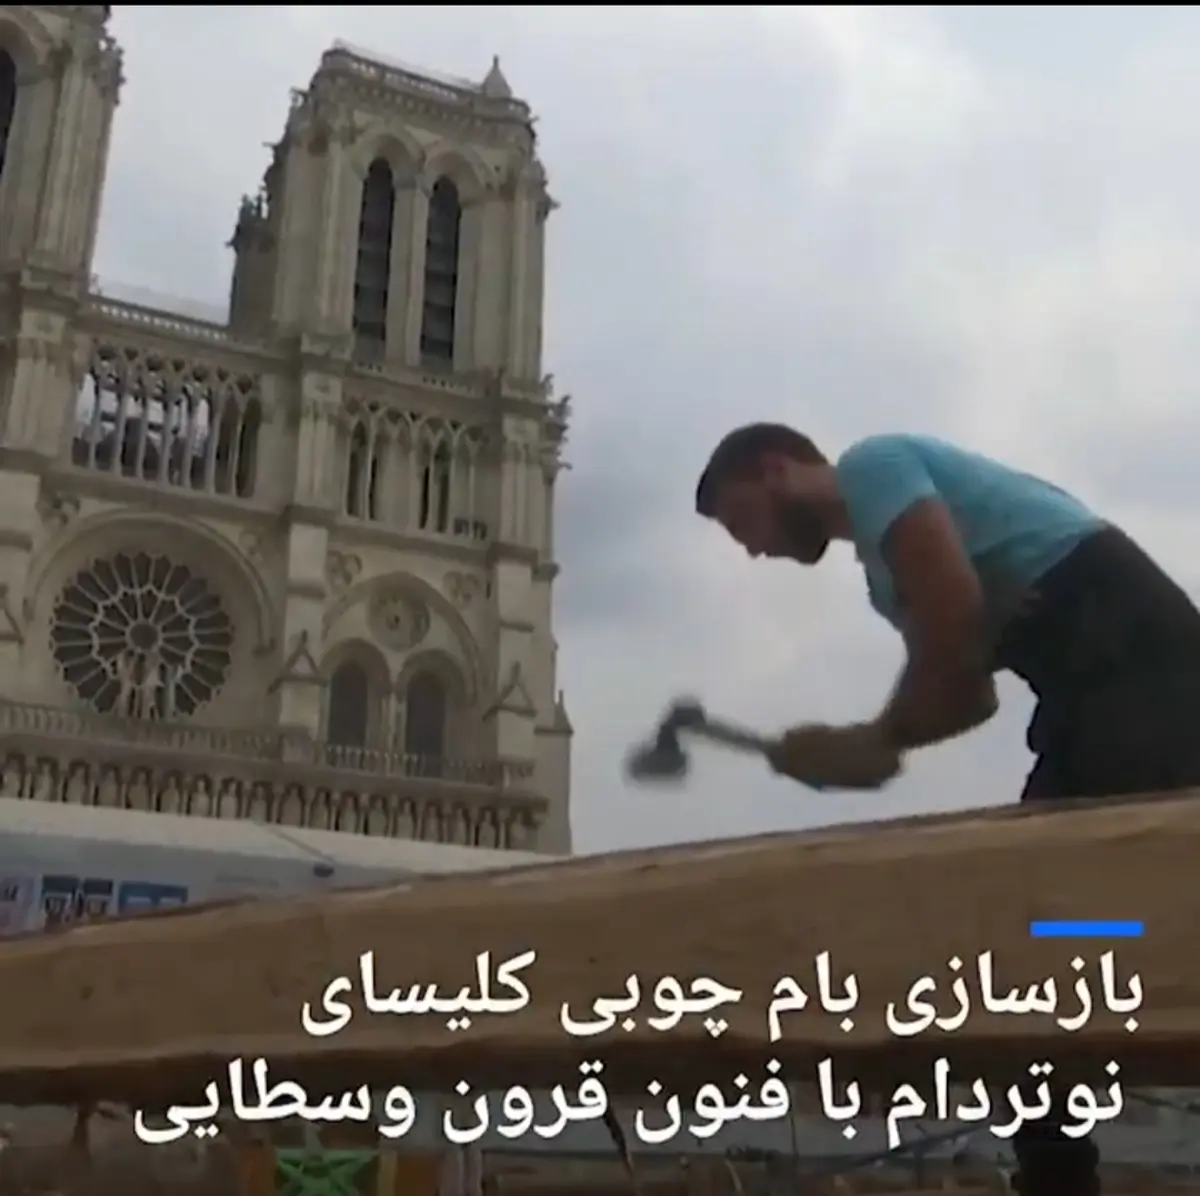 بازسازی بام چوبی کلیسای نوتردام با فنون قرون وسطایی+ ویدئو